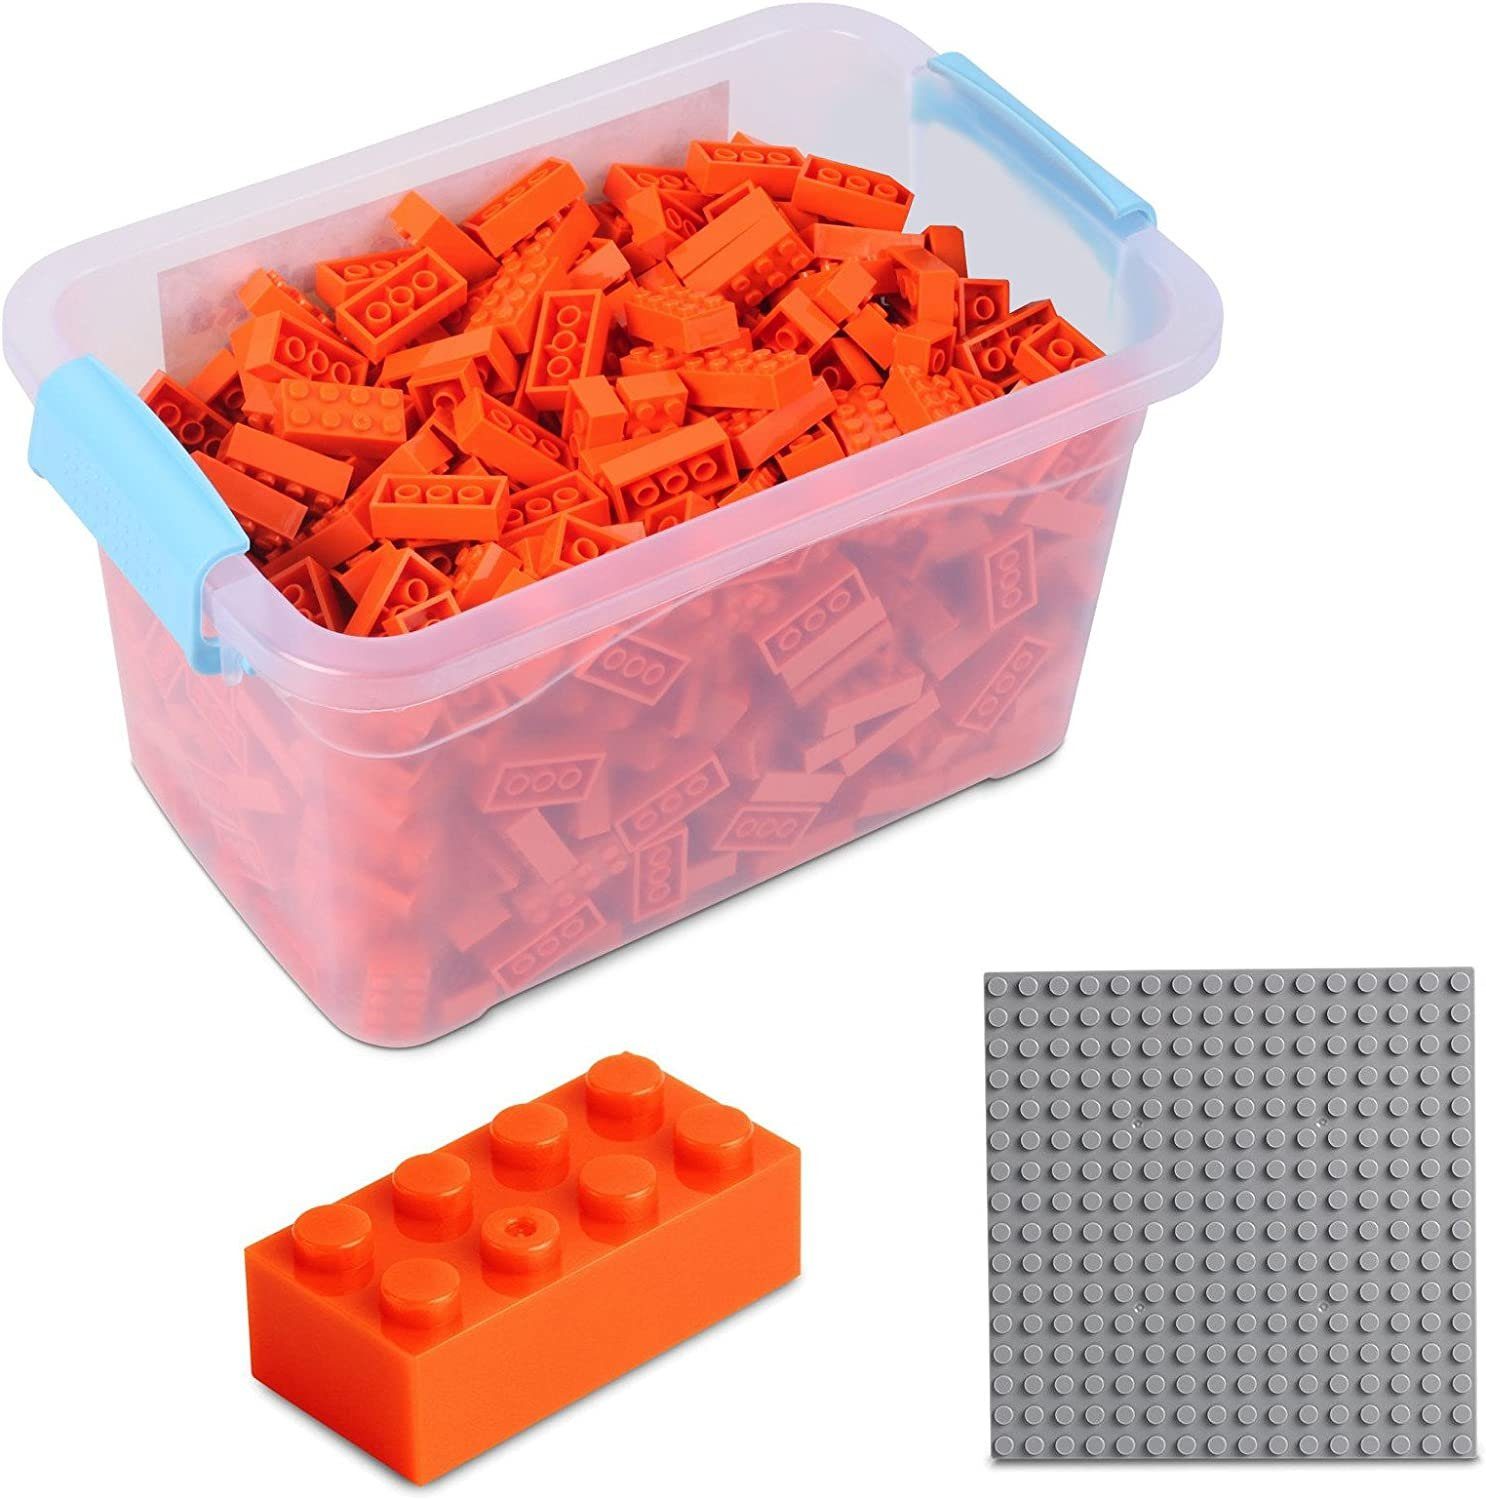 Katara Konstruktionsspielsteine Bausteine Box-Set mit 520 Steinen + Platte + Box, (3er Set), Kompatibel zu allen Anderen Herstellern - verschiedene Farben orange